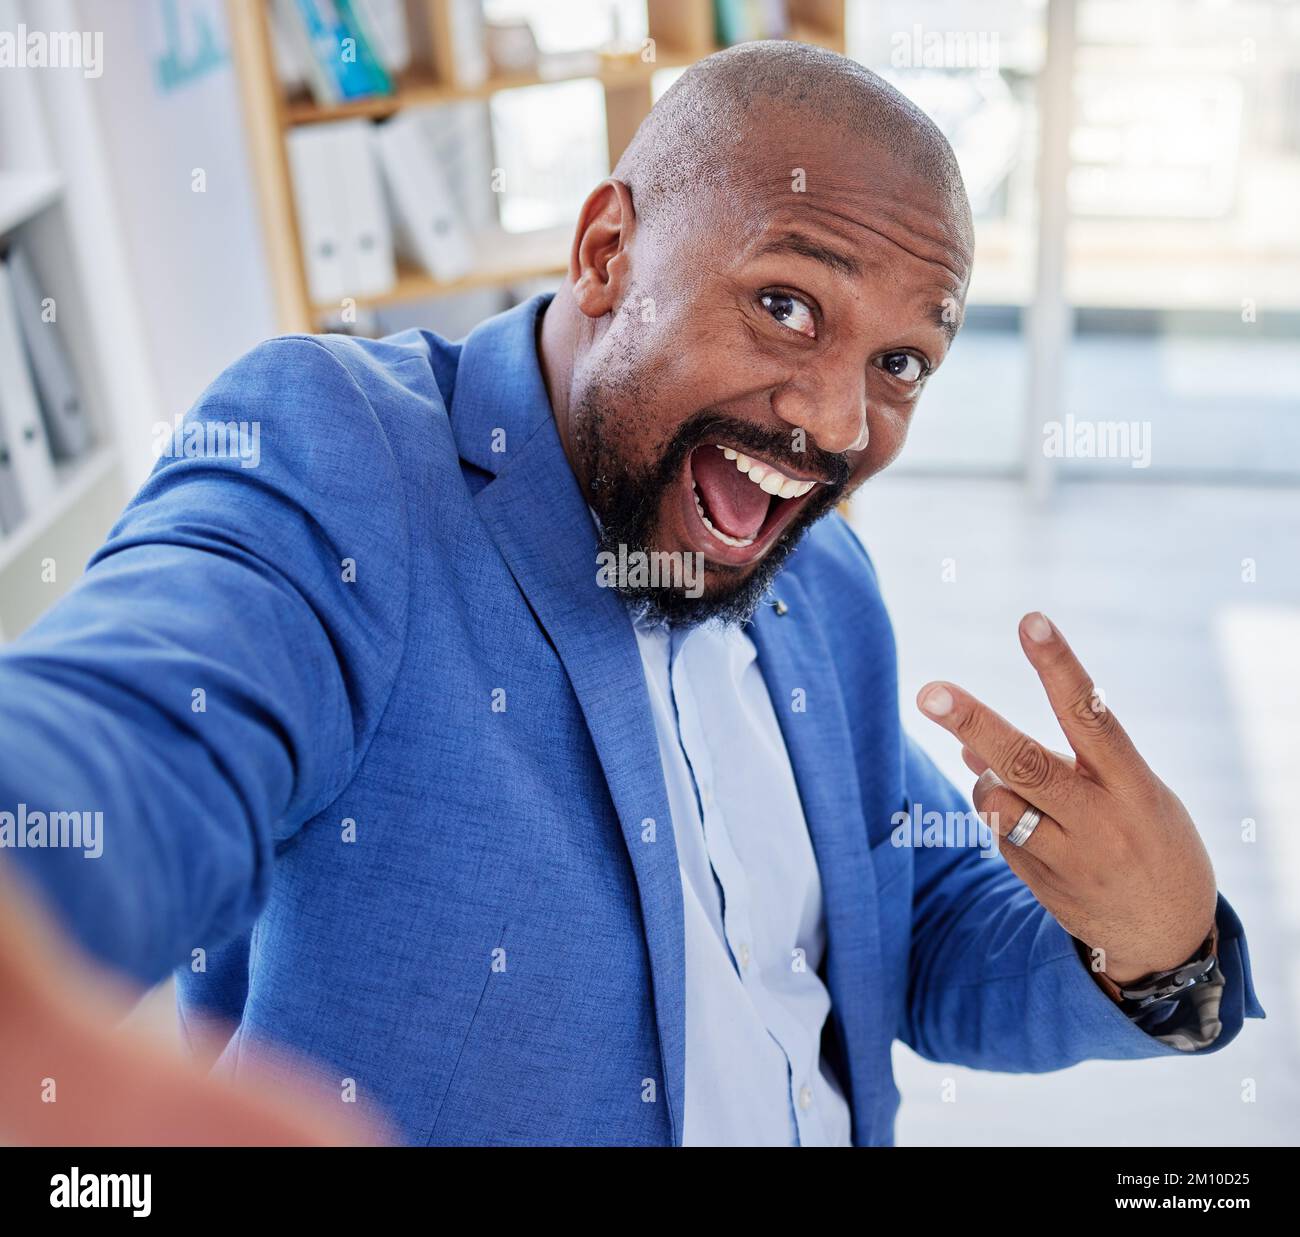 El hombre negro, el selfie y la paz firman el éxito empresarial, mientras que están emocionados y entusiasmados con las publicaciones en medios sociales o blogs sobre logros o victorias Foto de stock